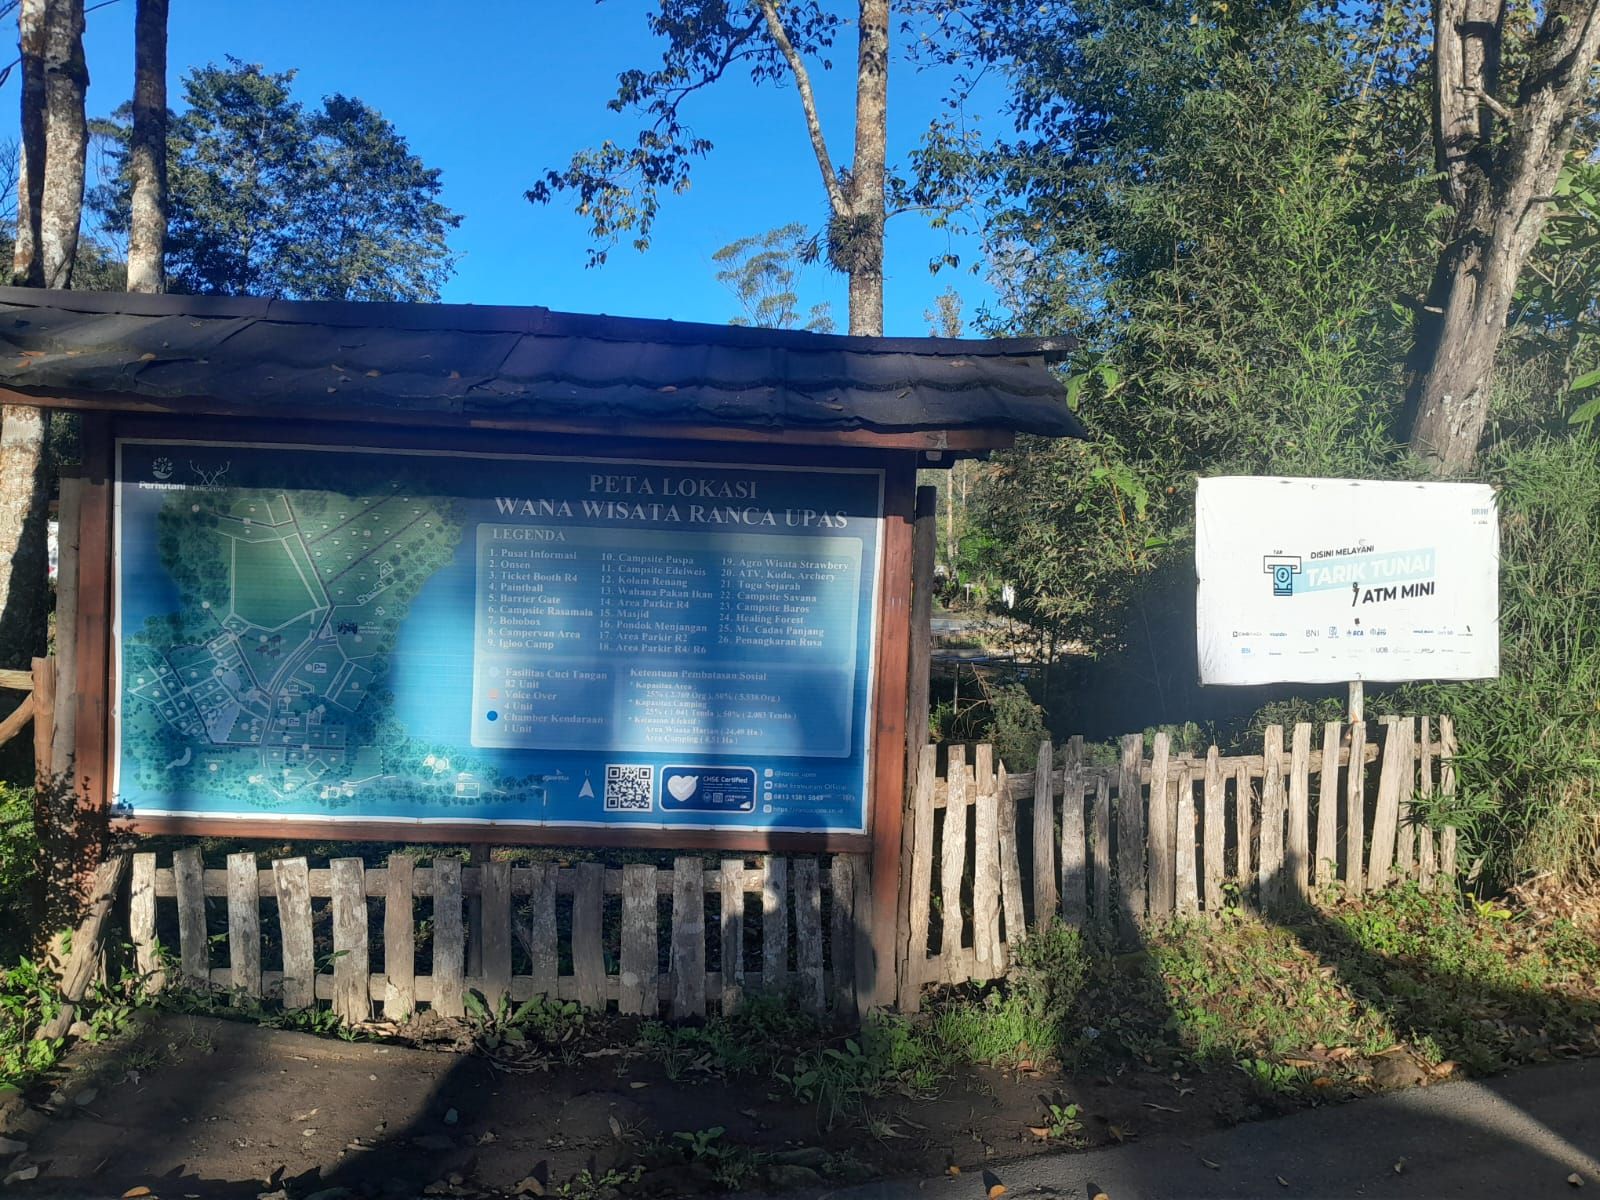 Kini di dalam Ranca Upas terdapat layanan mini ATM untuk para pengunjung objek wisata milik Perhutani ini.